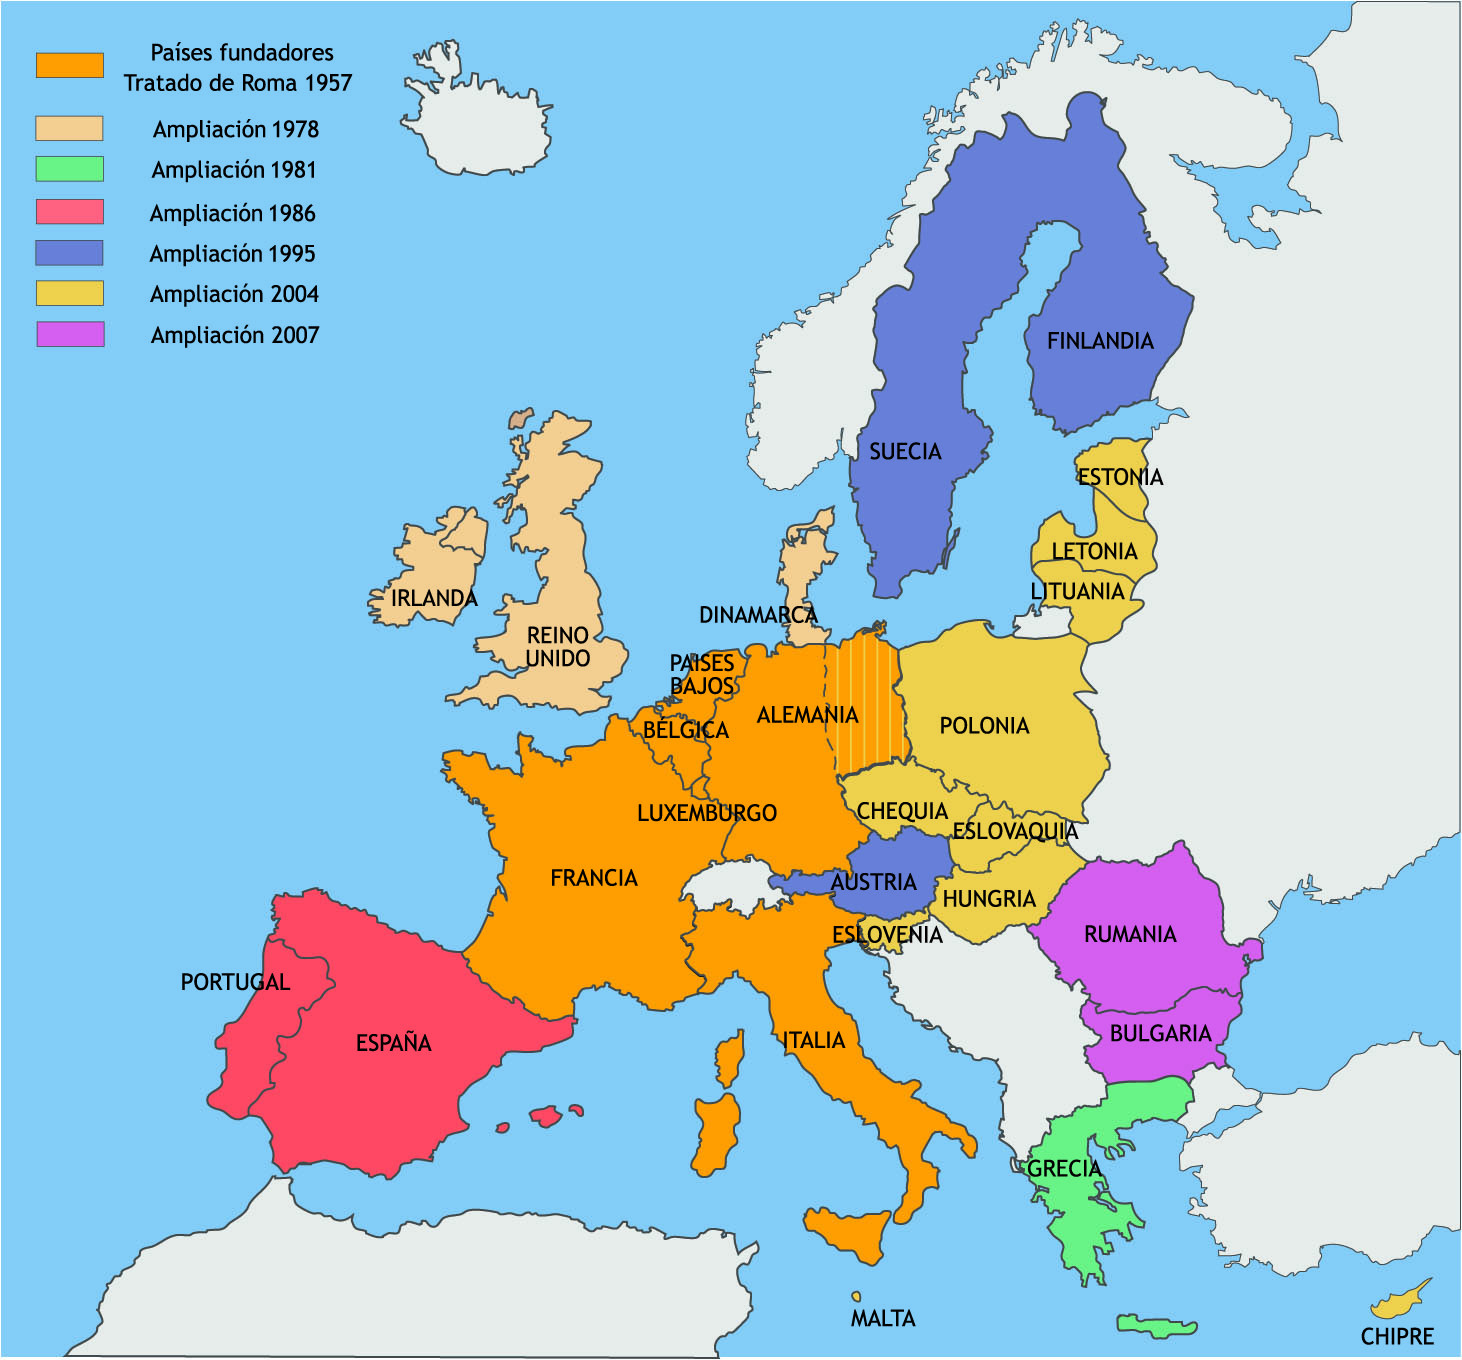 a-mi-a-clase-de-3-mapas-interactivos-da-uni-n-europea